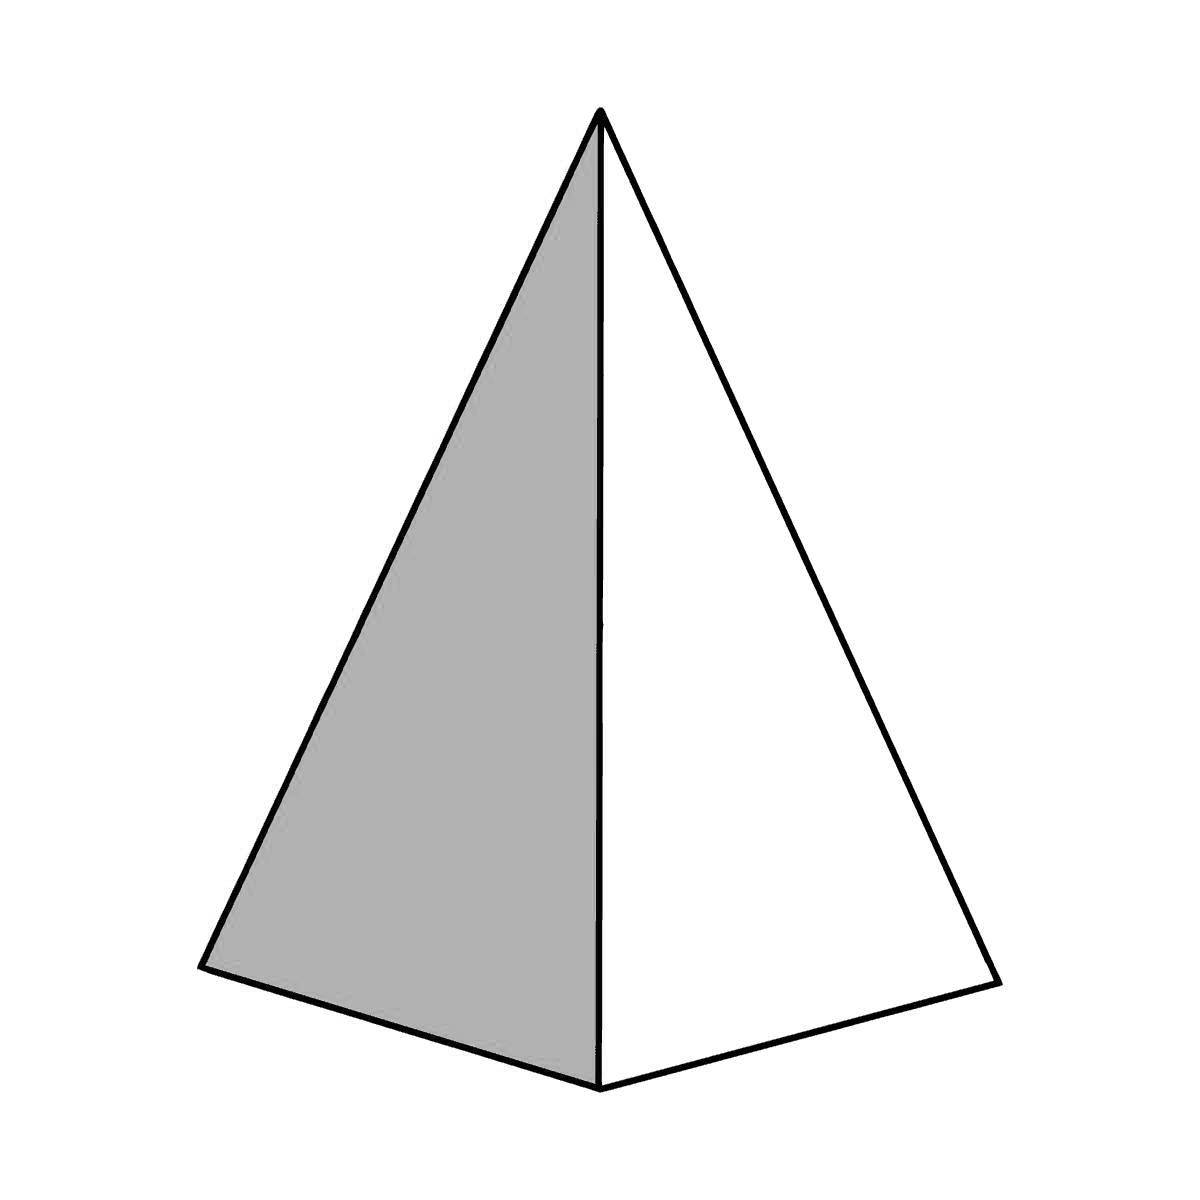 Great pyramid coloring